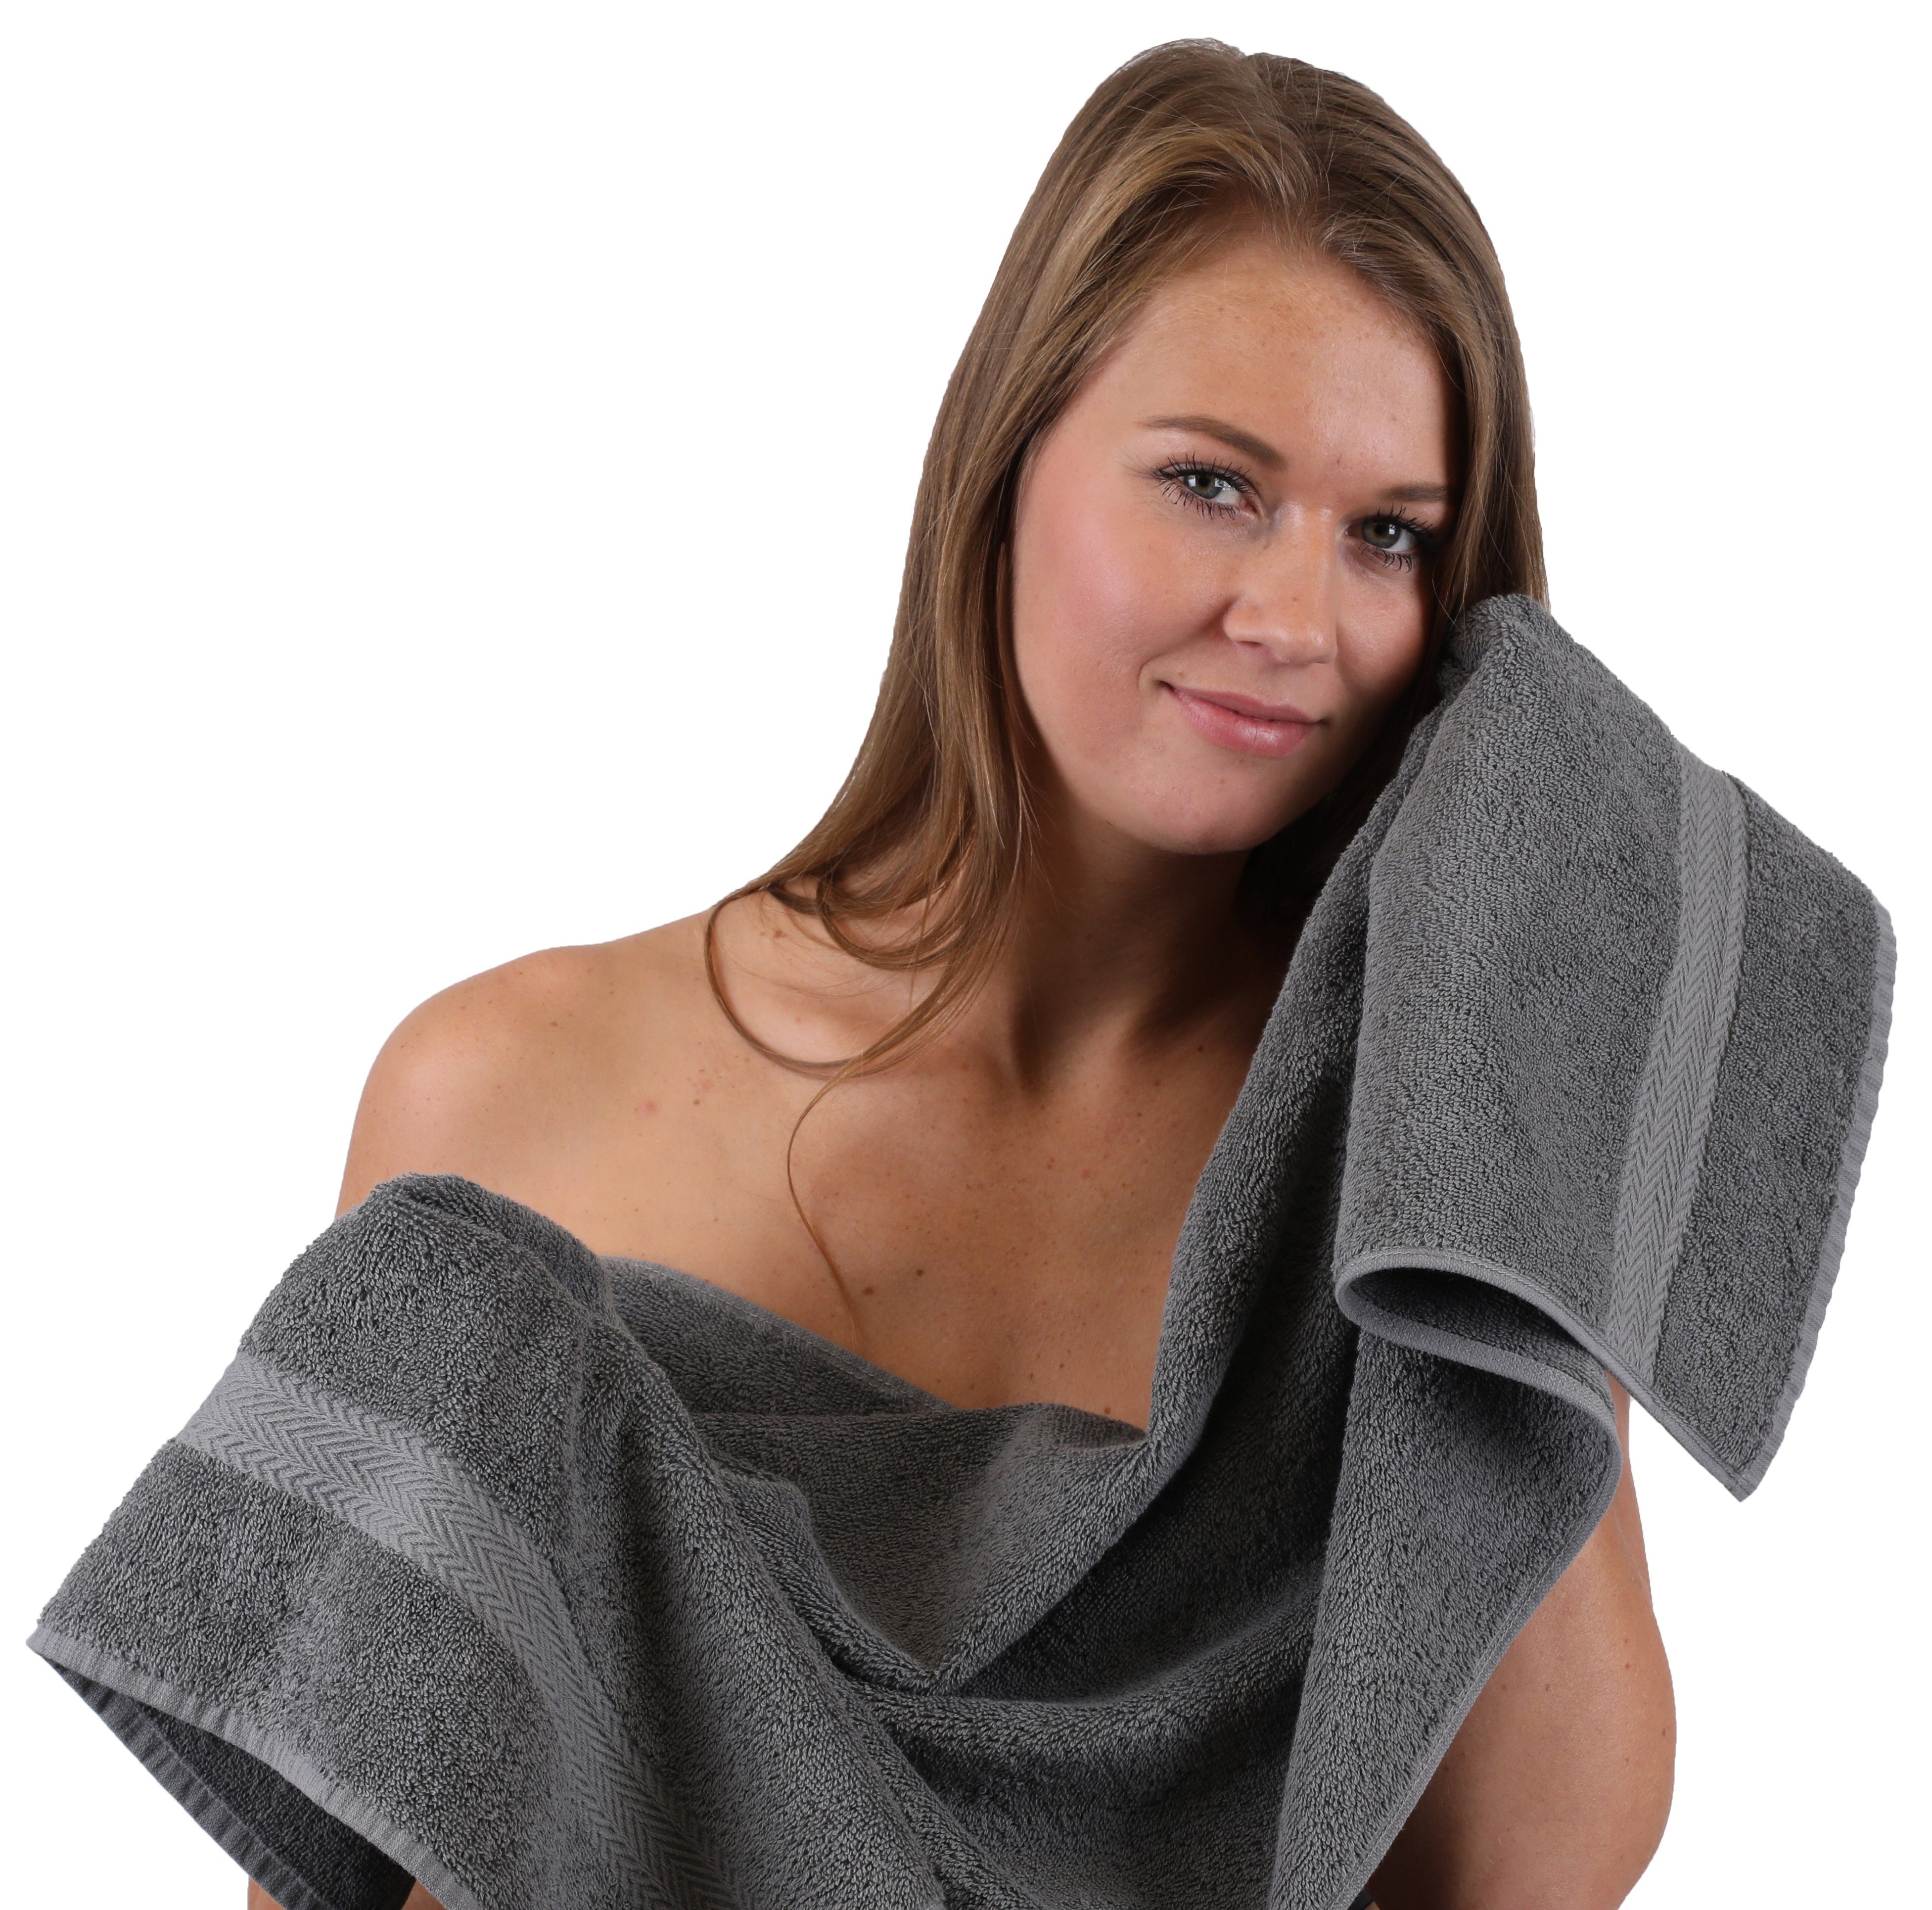 & Beige Handtuch 10-TLG. 10-tlg) Handtuch-Set Betz Anthrazit, Set Premium 100% Farbe (Set, Baumwolle,